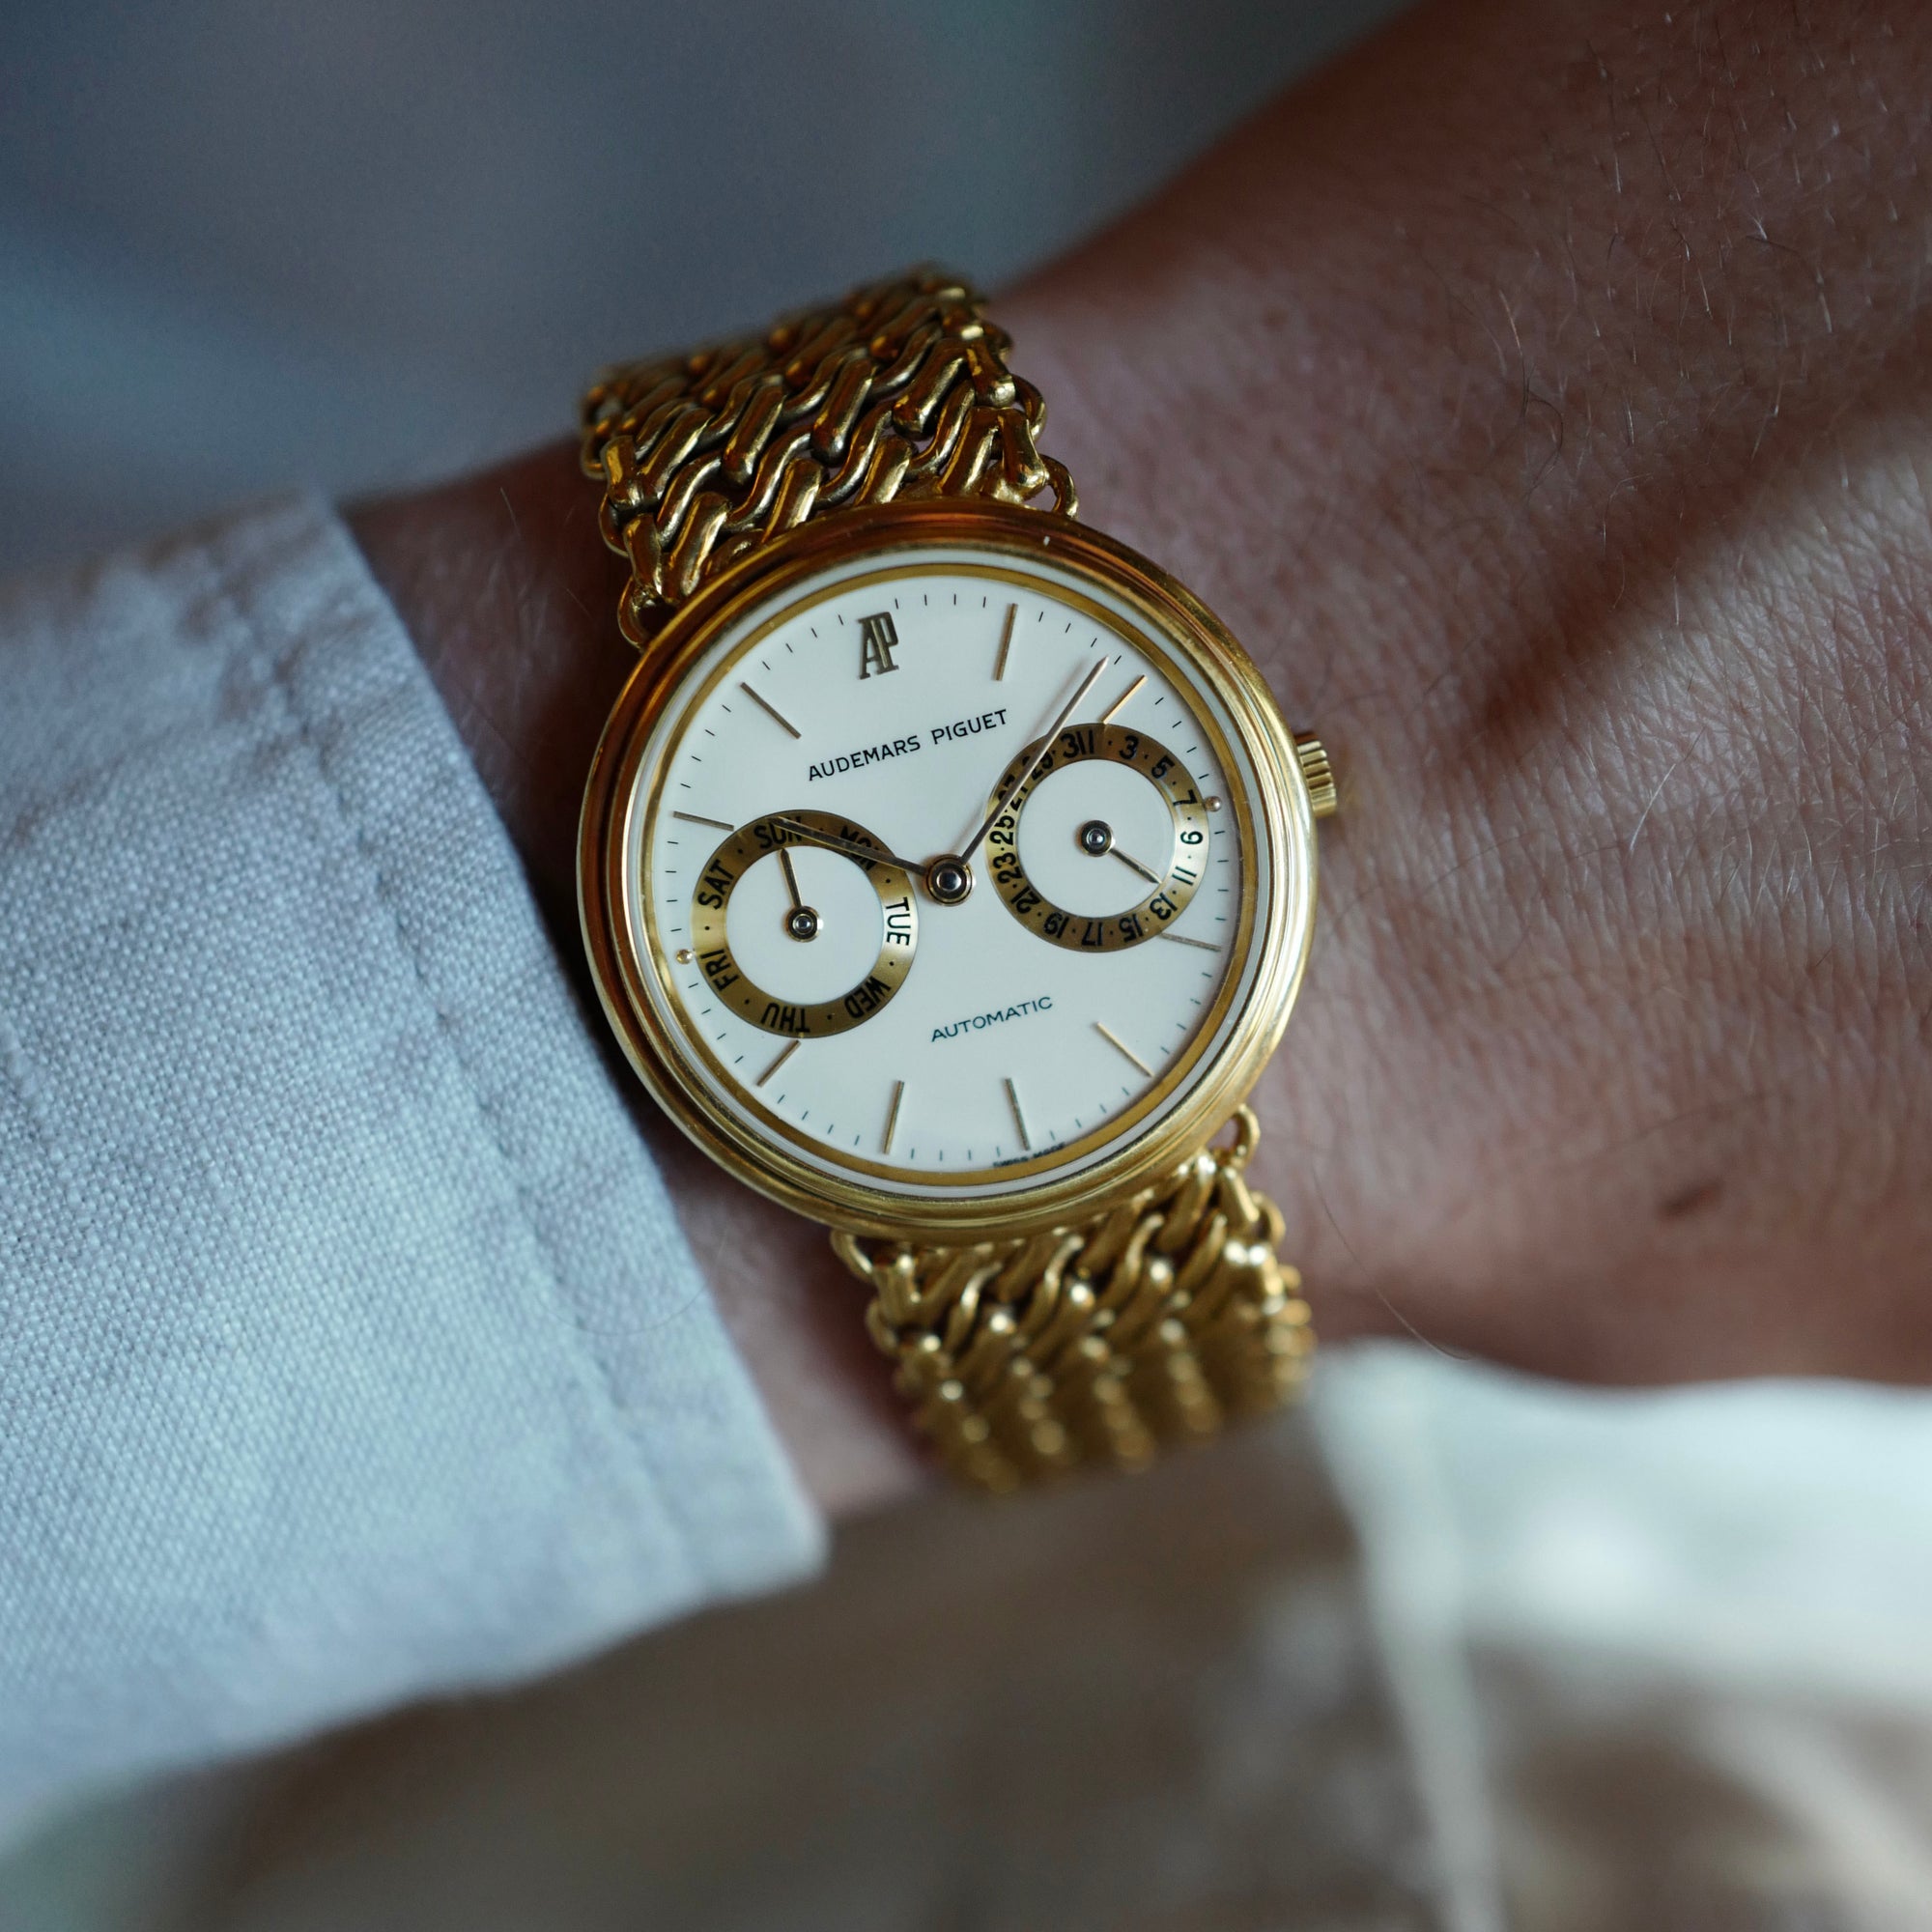 Audemars Piguet - Audemars Piguet Yellow Gold Day-Date Watch Ref. 25574 - The Keystone Watches